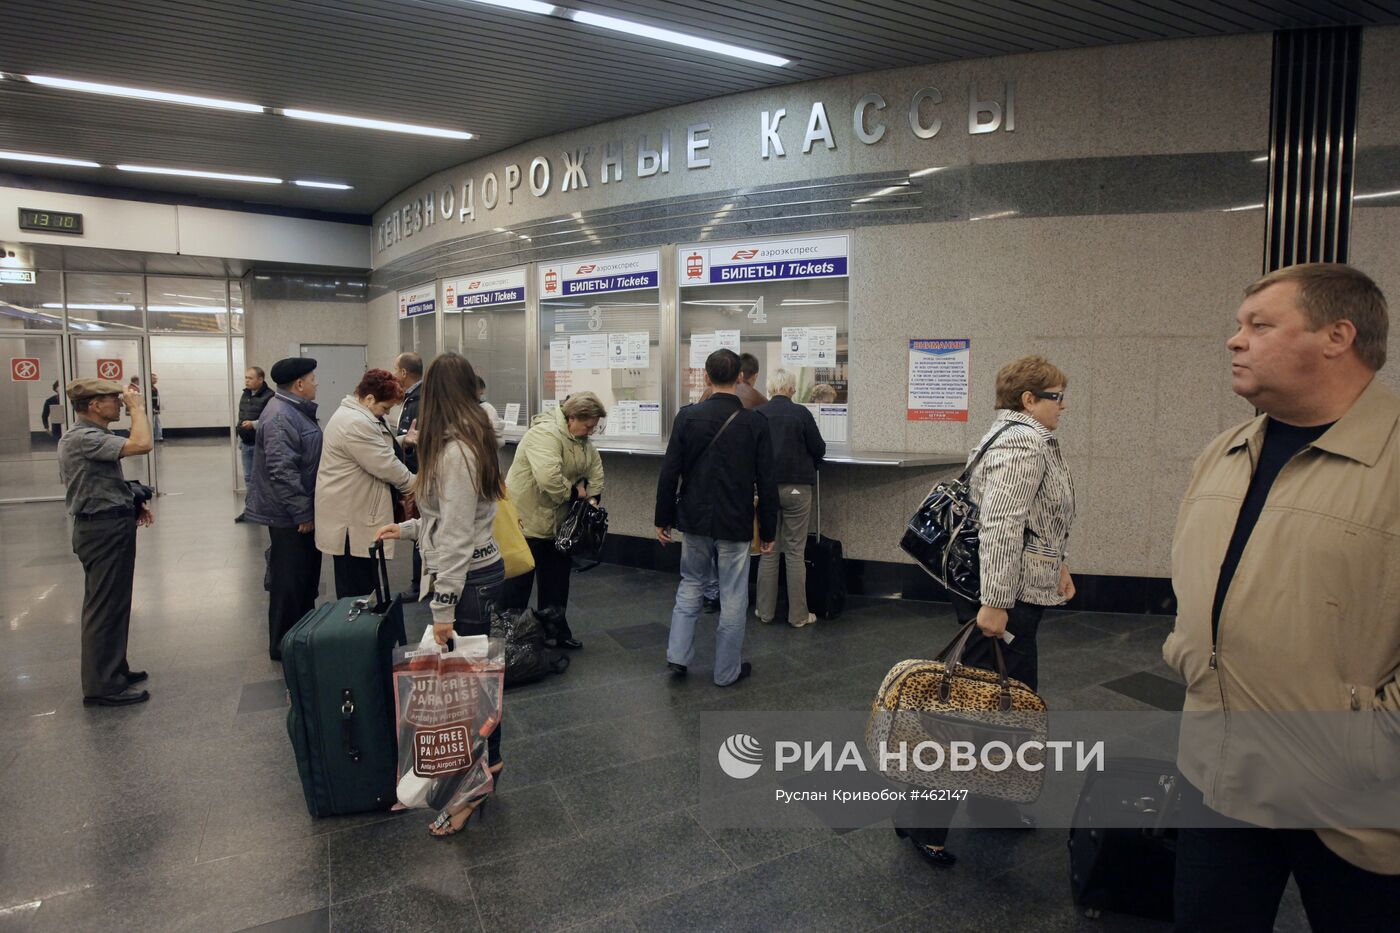 Подземный железнодорожный терминал аэропорта "Внуково"